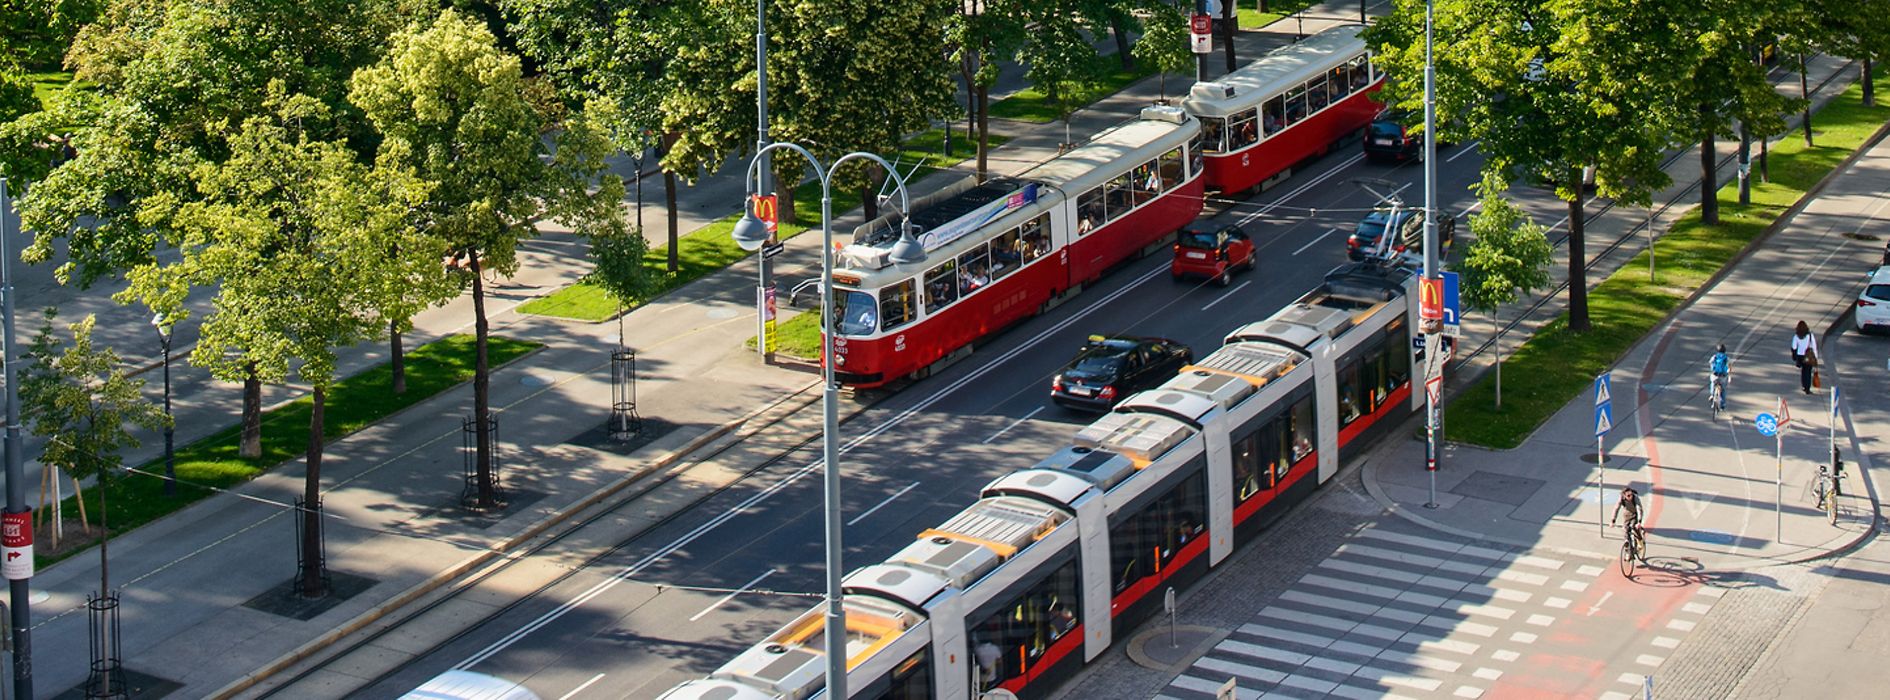 Трамвай на улице Рингштрассе